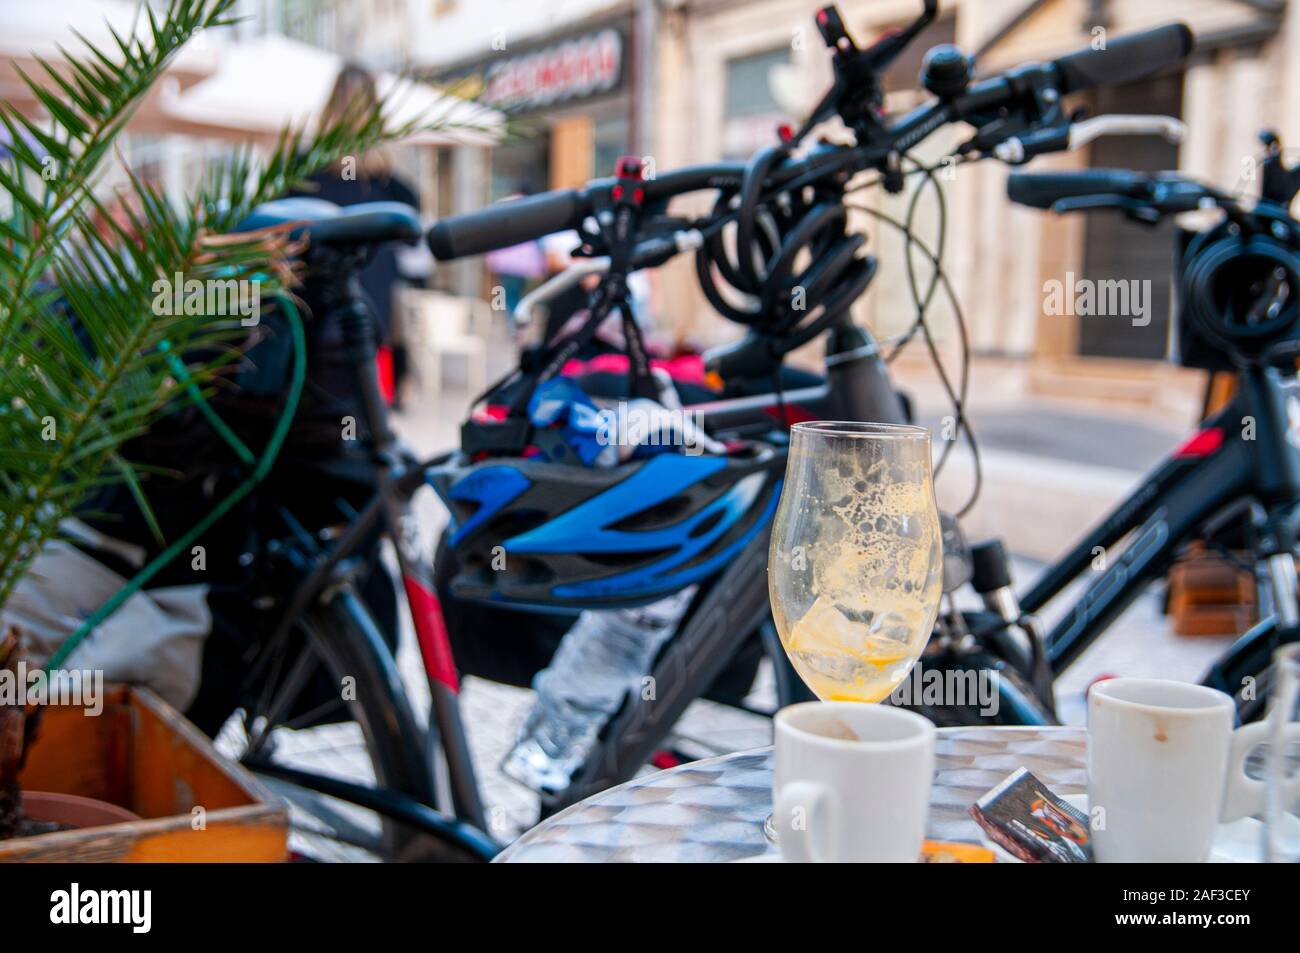 Gita in Bicicletta del concetto. A riposo a un open air cafe le biciclette sono nelle vicinanze. Con un fuori fuoco di fondo urbano. Fotografato a Coimbra, Portogallo Foto Stock